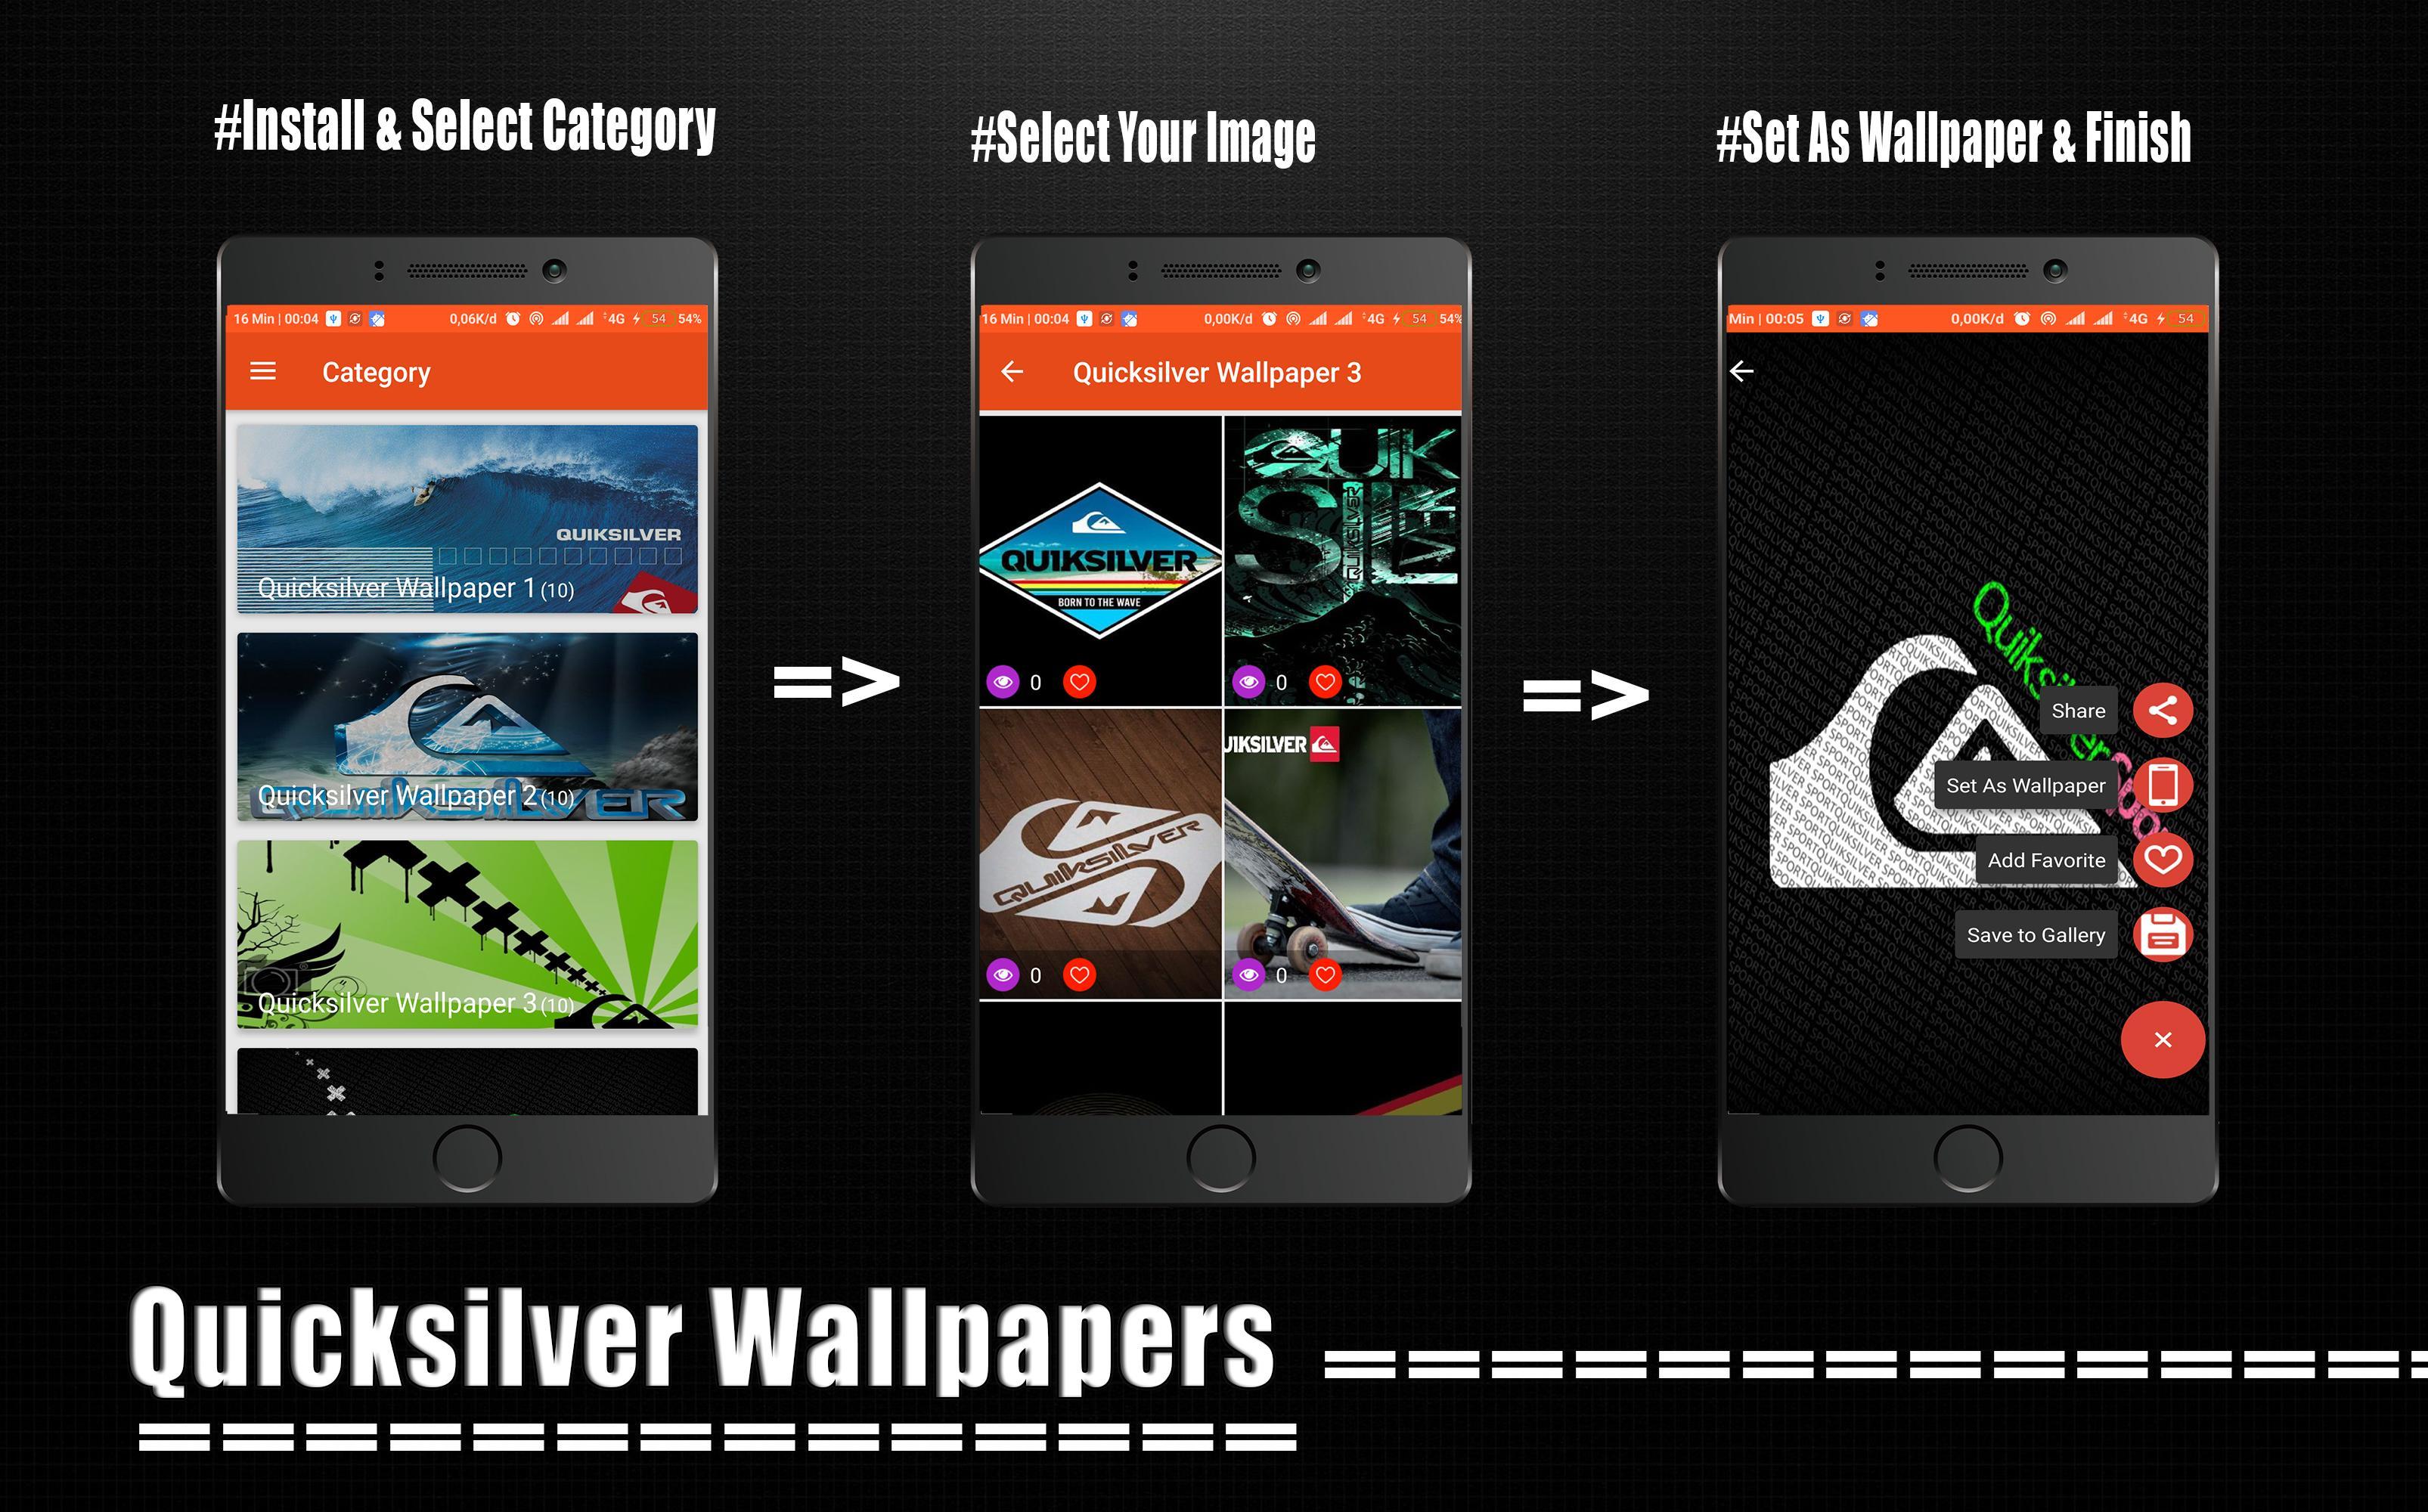 Download Gambar Quiksilver Wallpaper Hd Android terbaru 2020